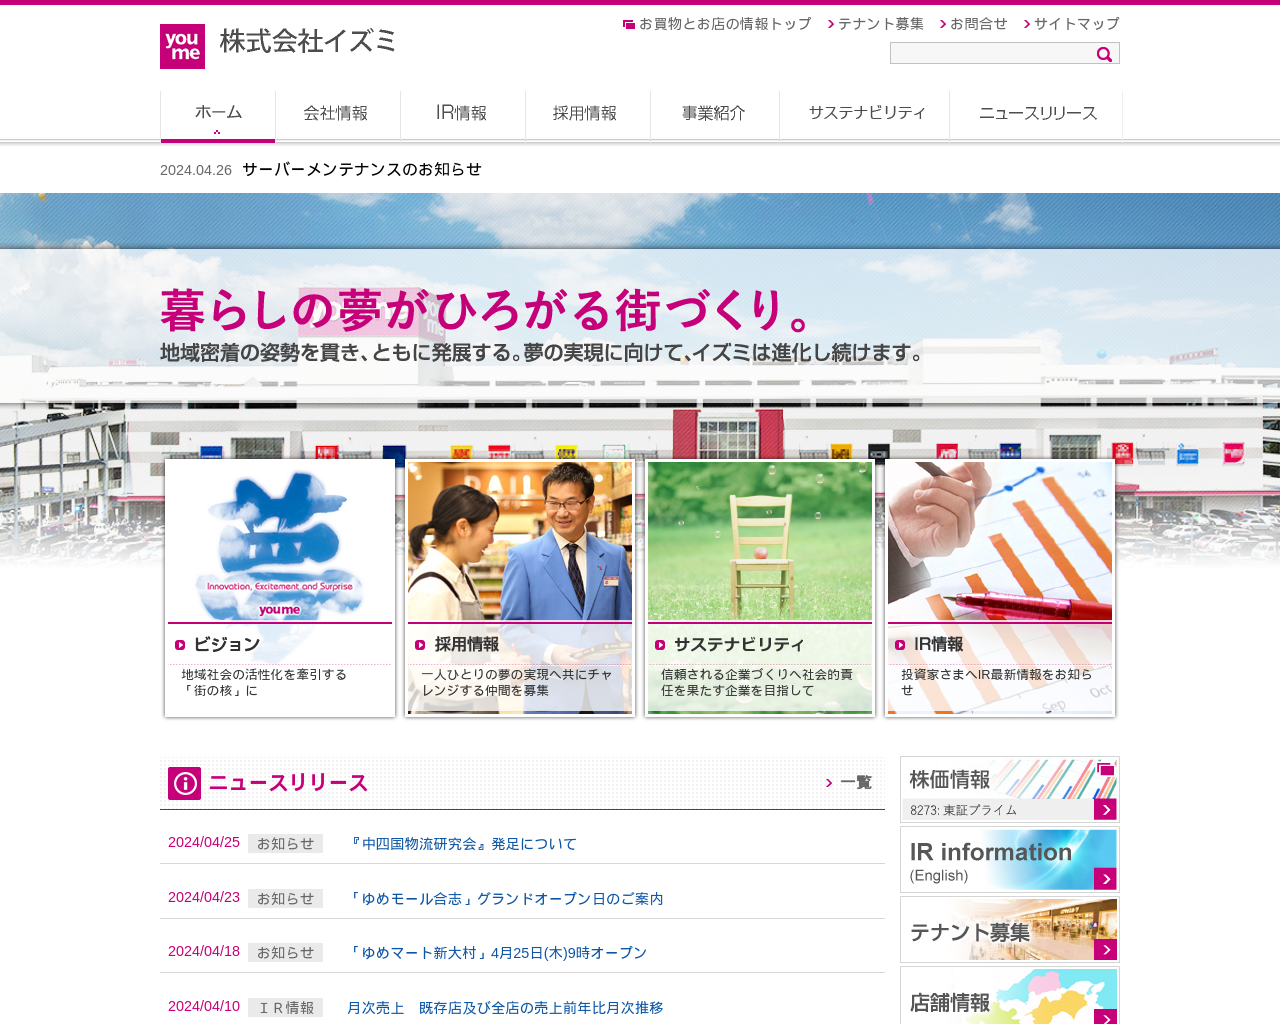 izumi.co.jp